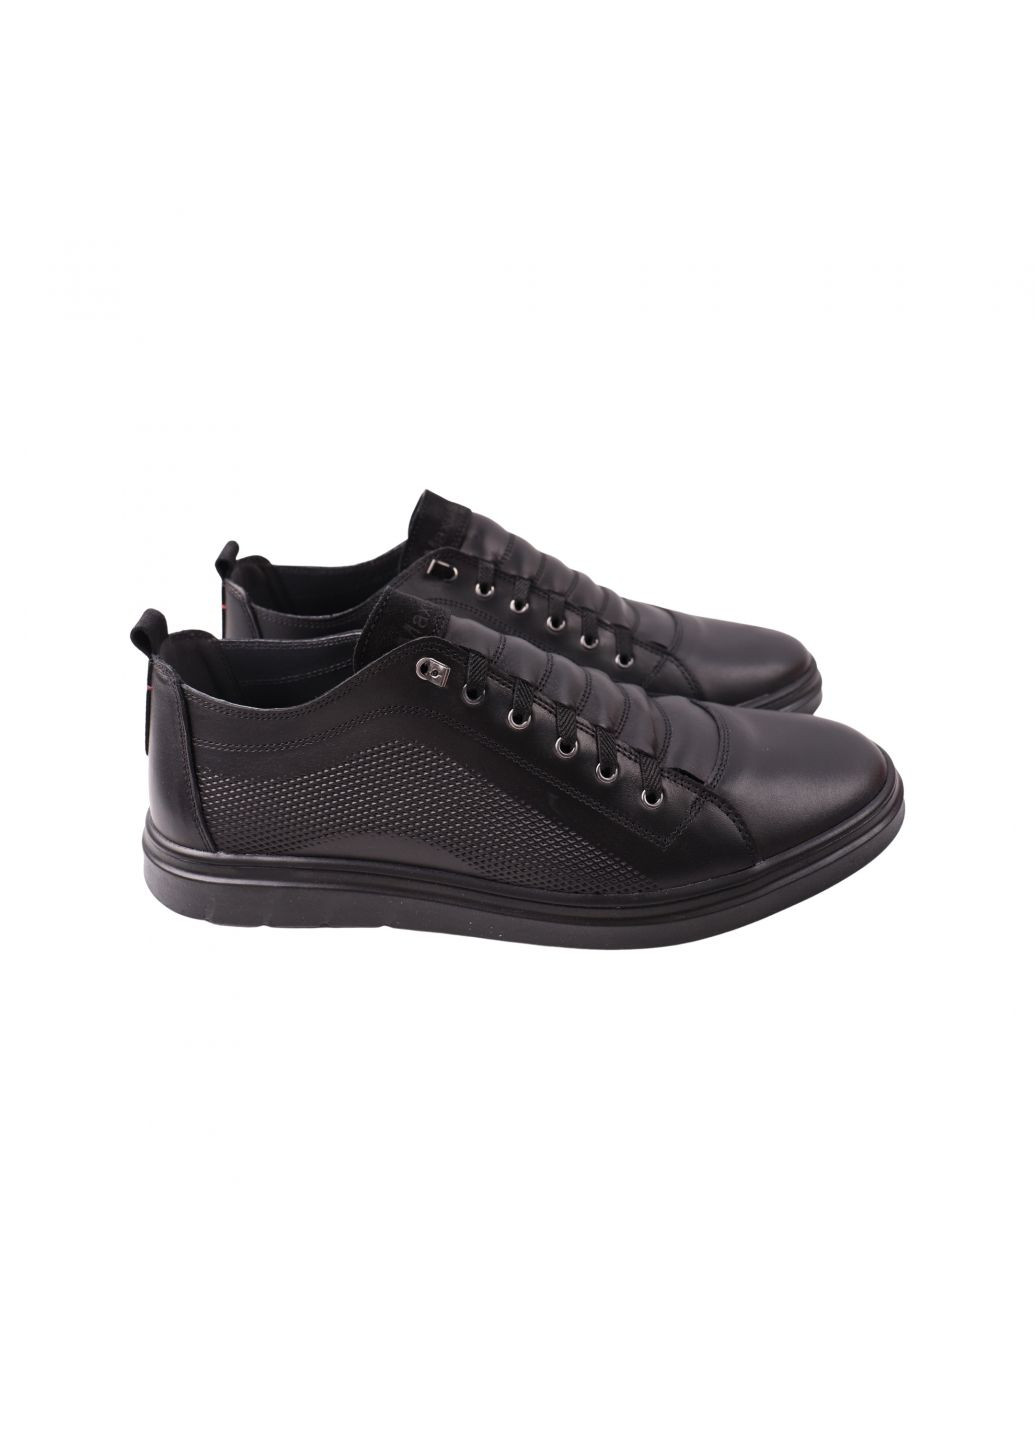 Черные кеды мужские черные натуральная кожа Maxus Shoes 119-23DTC